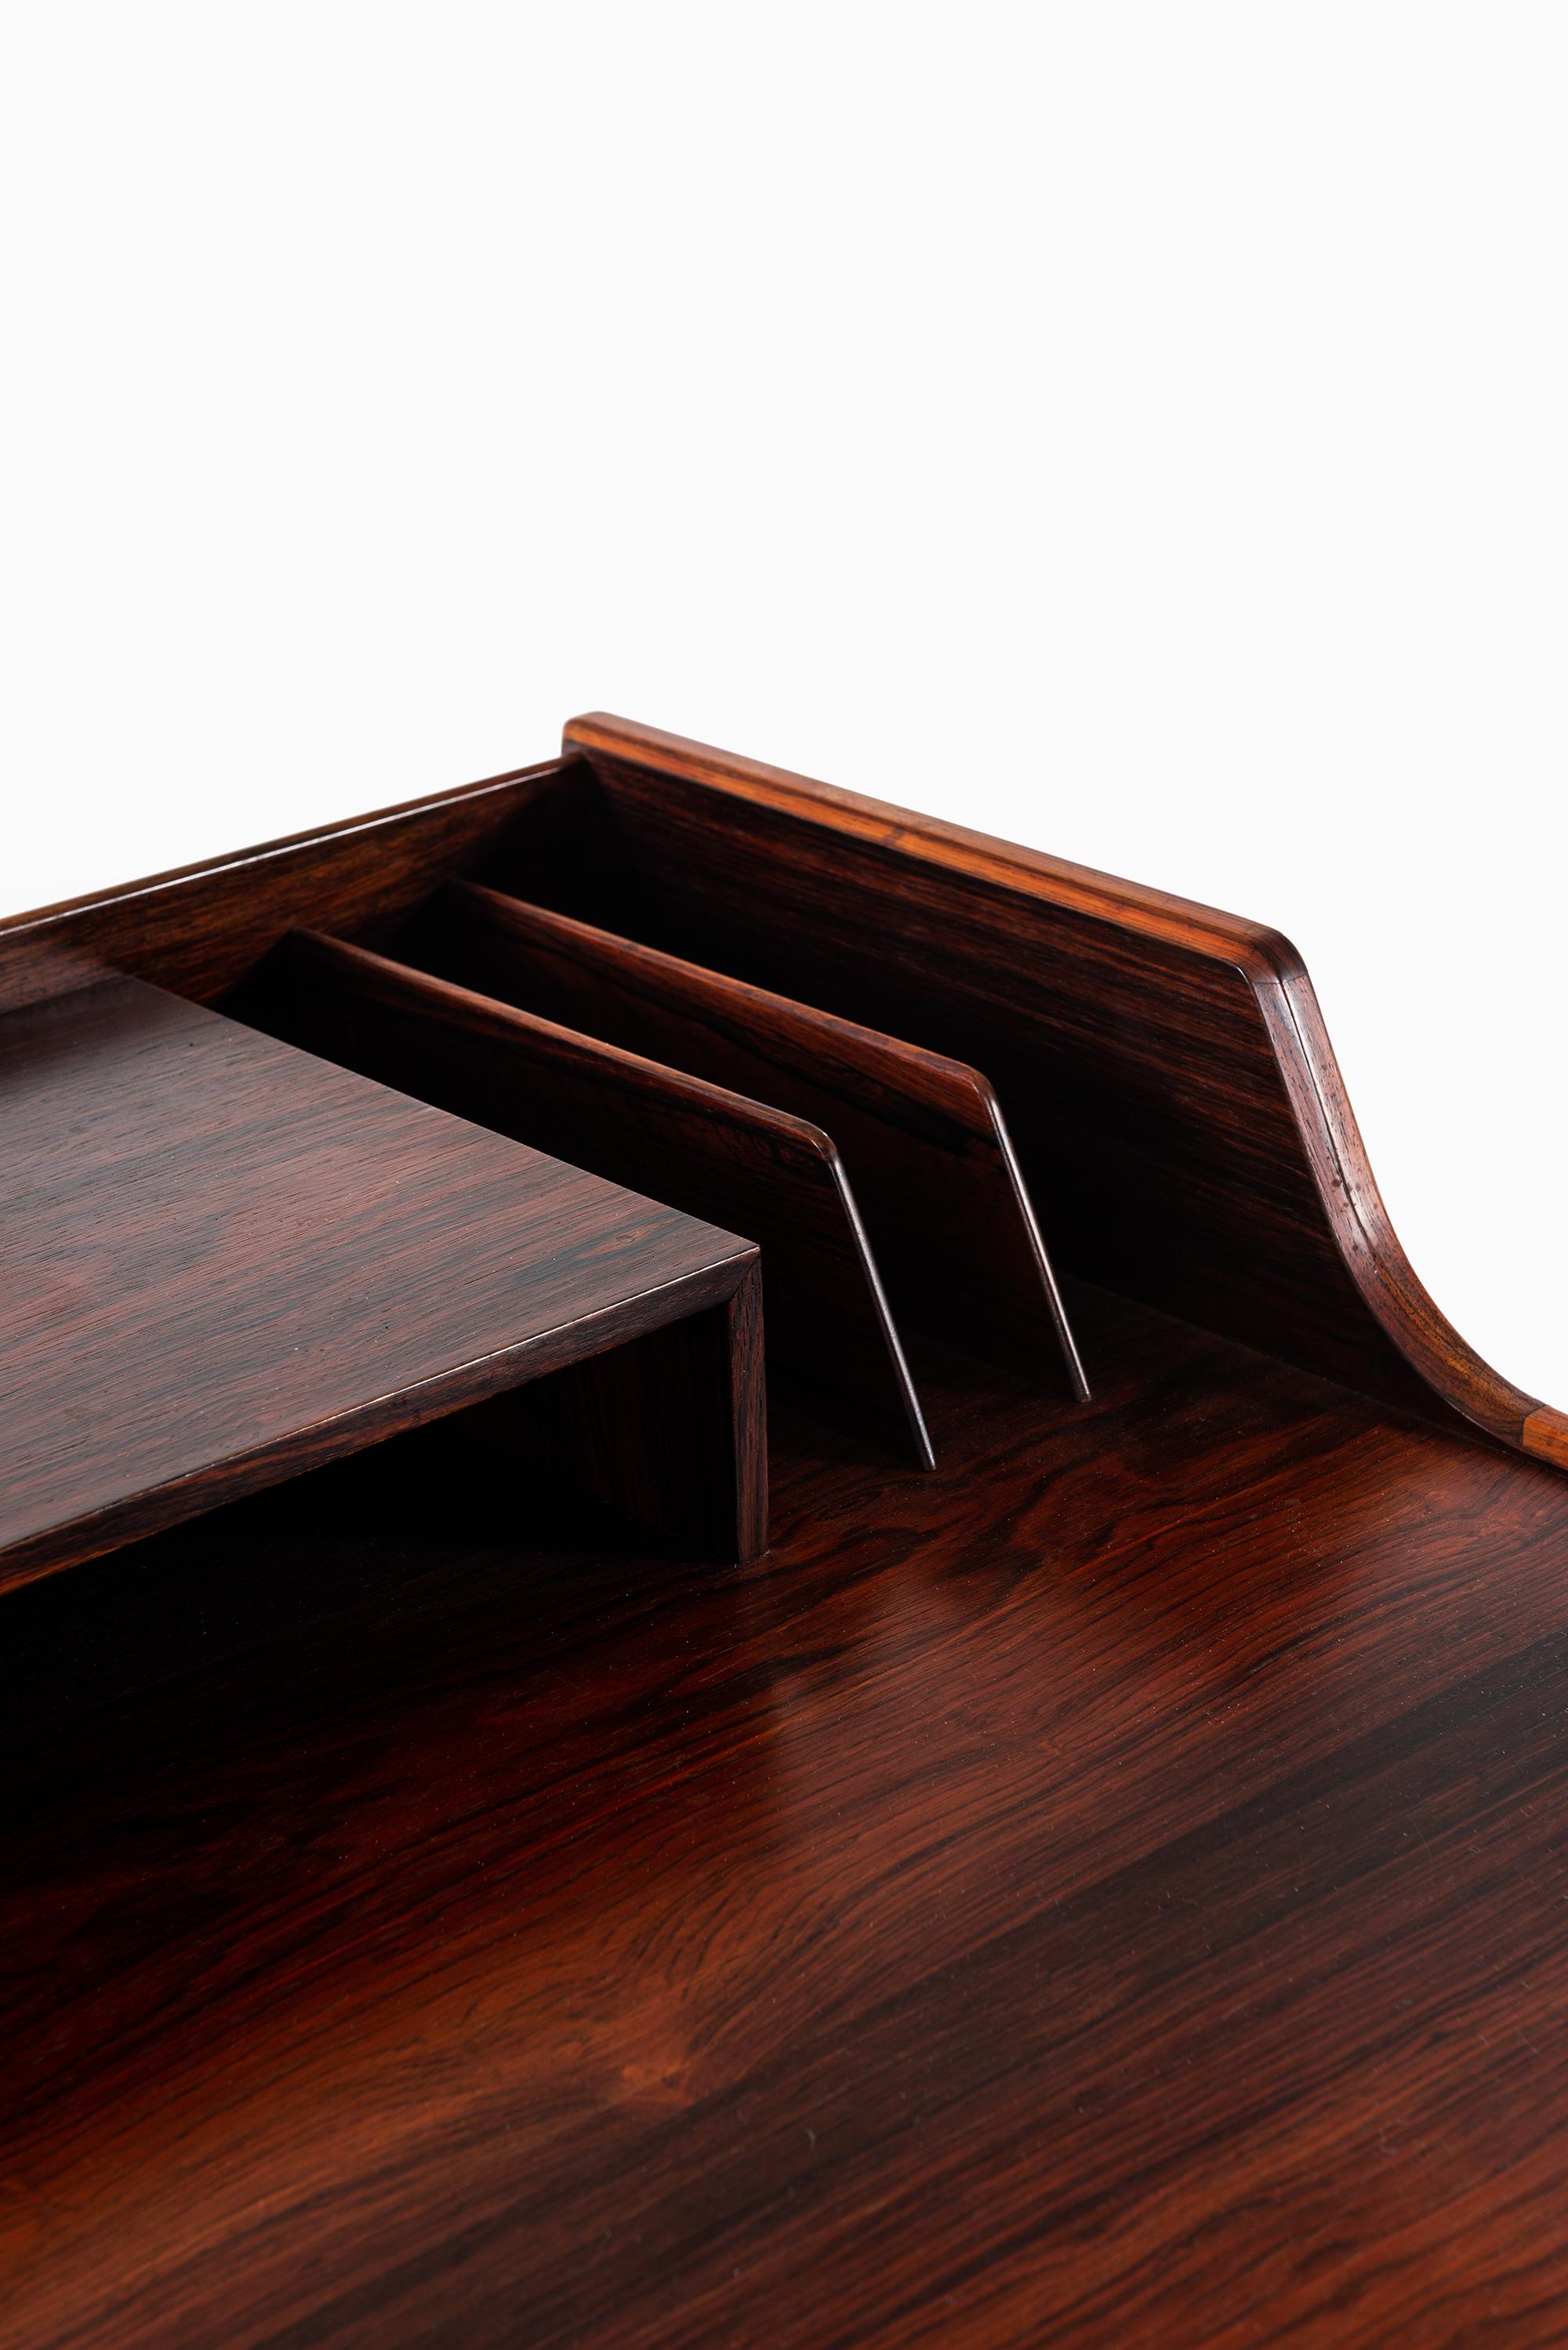 Rare desk / vanity model 64 designed by Arne-Wahl Iversen. Produced by Vinde Møbelfabrik in Denmark.